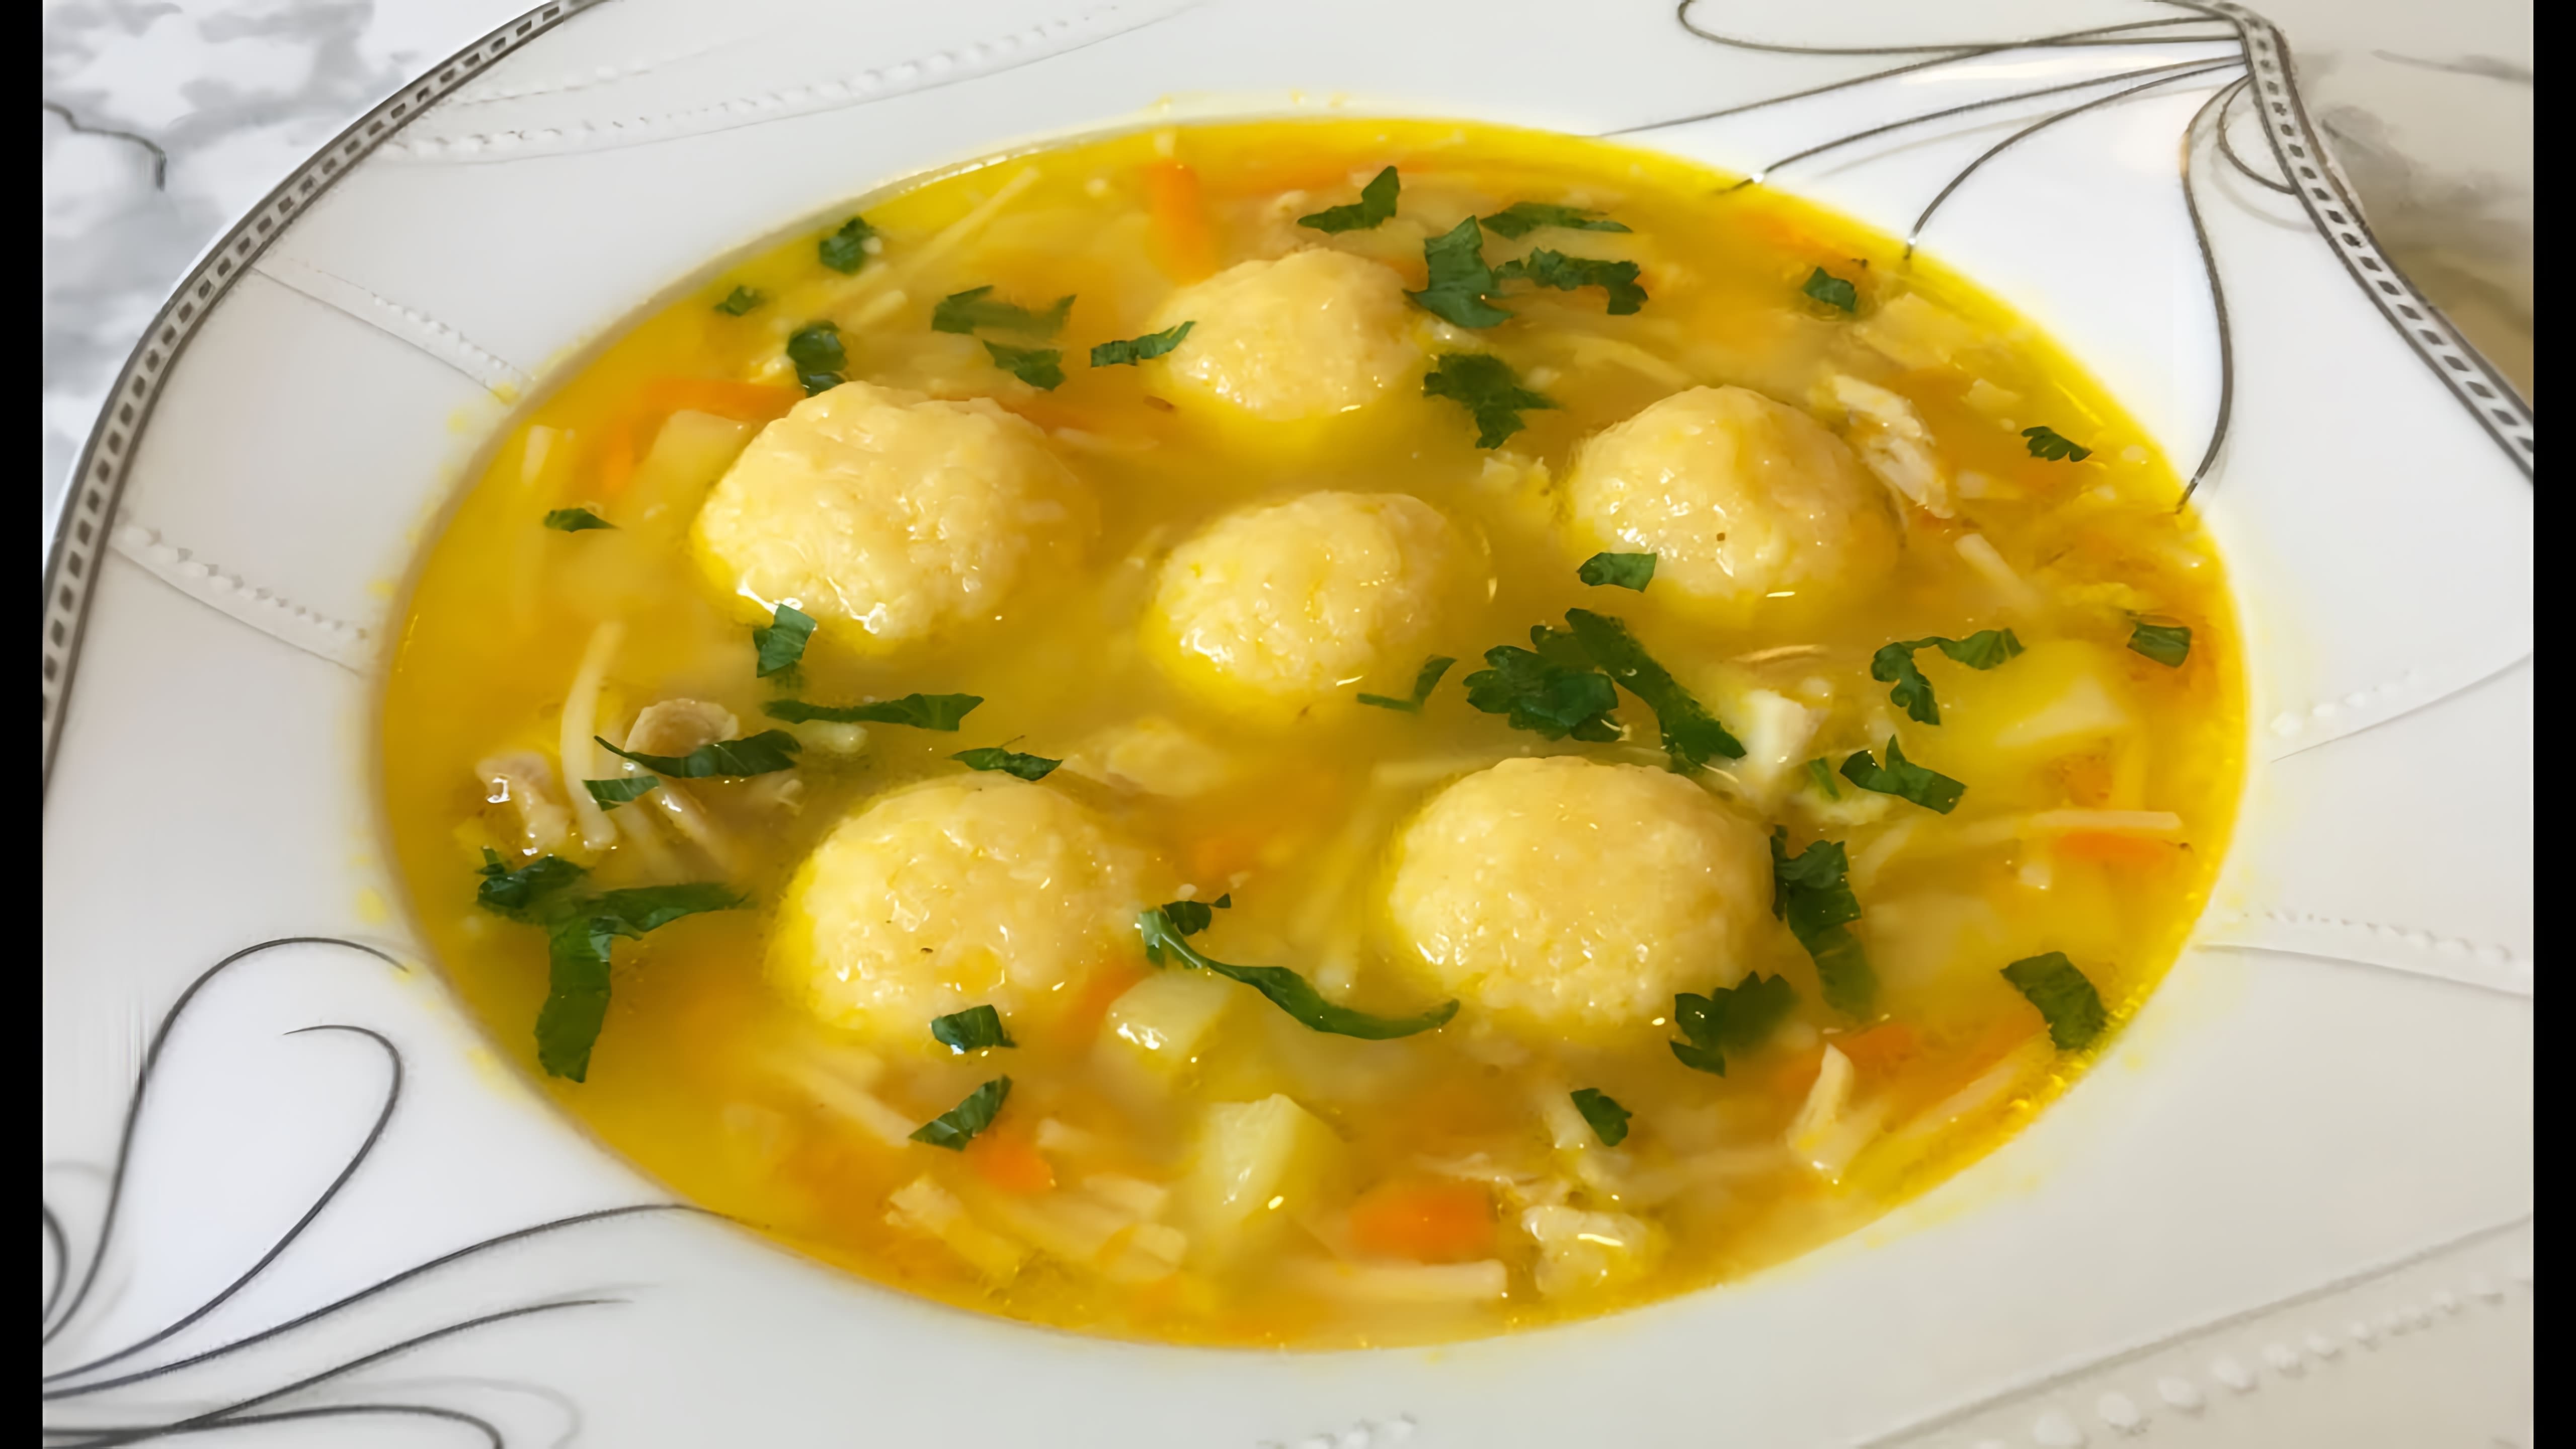 В этом видео демонстрируется процесс приготовления вкусного и питательного куриного супа с сырными шариками